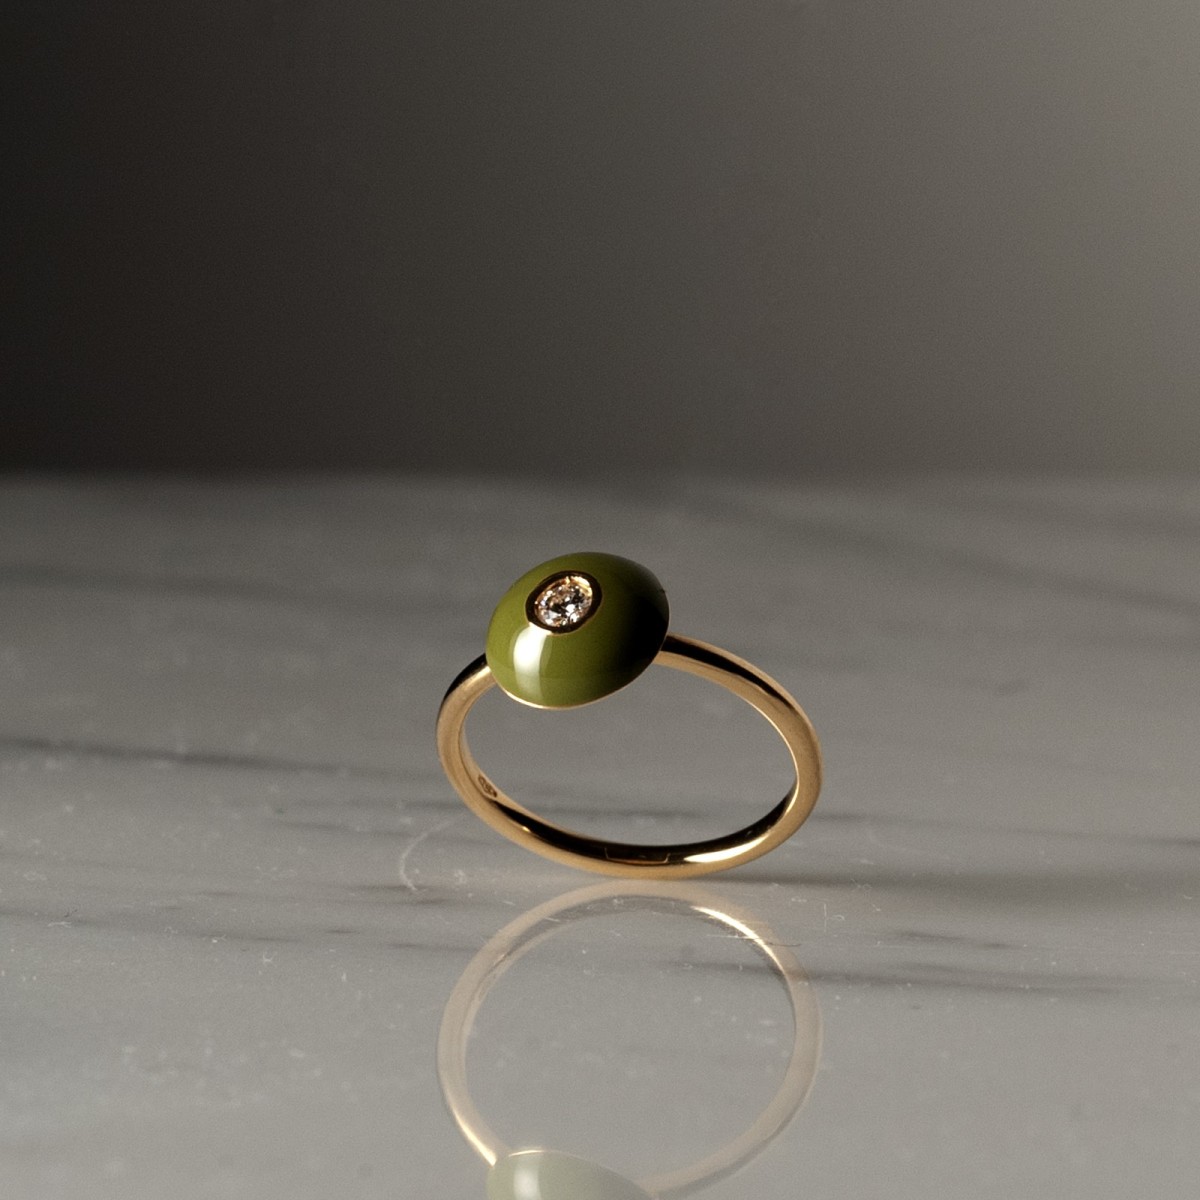 FUTURE GM 2137 - Handmade ring